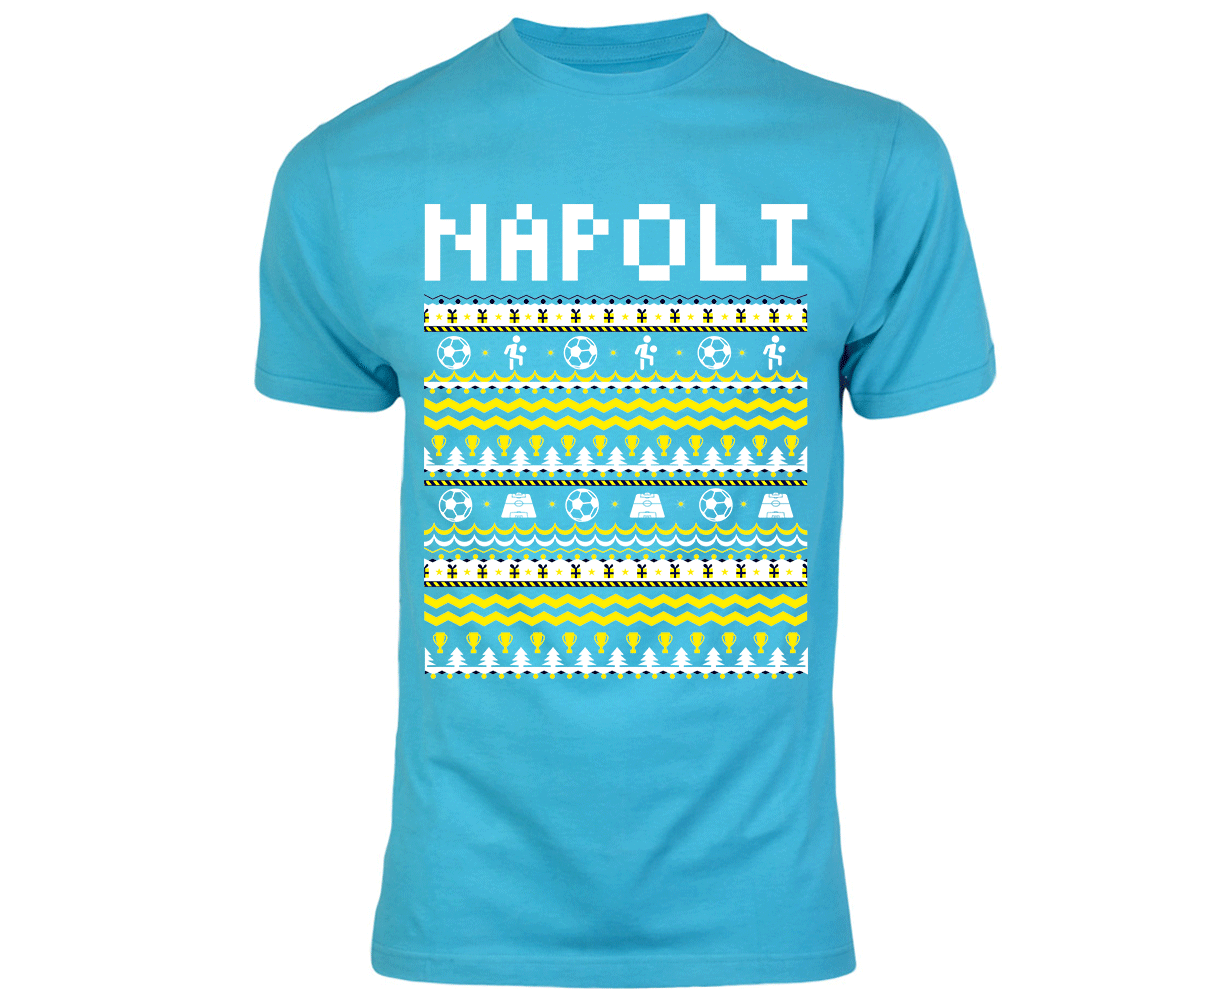 Napoli Christmas T-Shirt (Sky Blue)